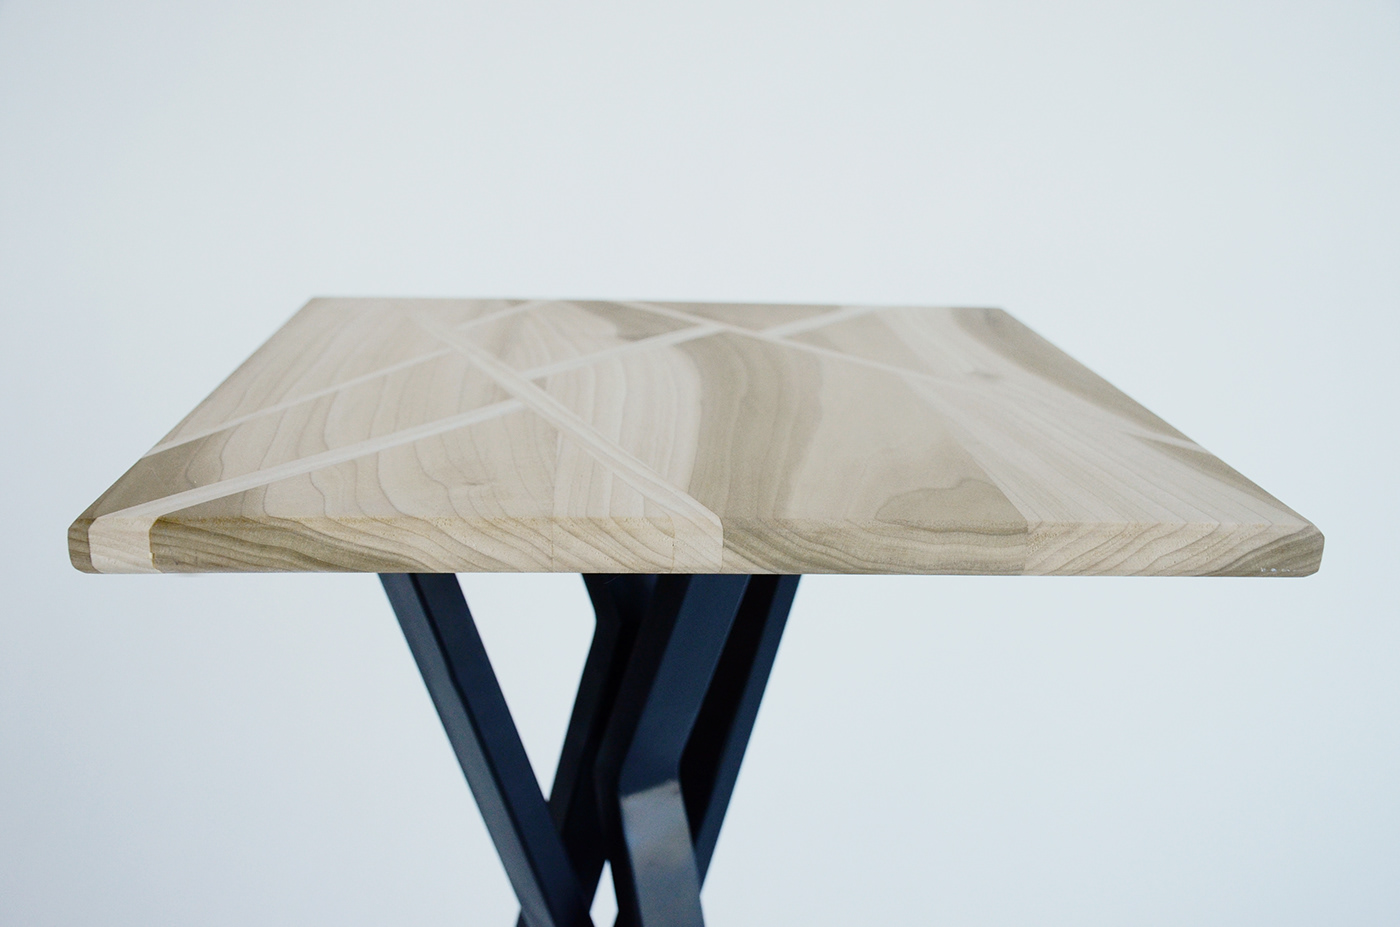 woodworking furniture furniture design  metalwork product design  industrial design  handmade design Project Design side table